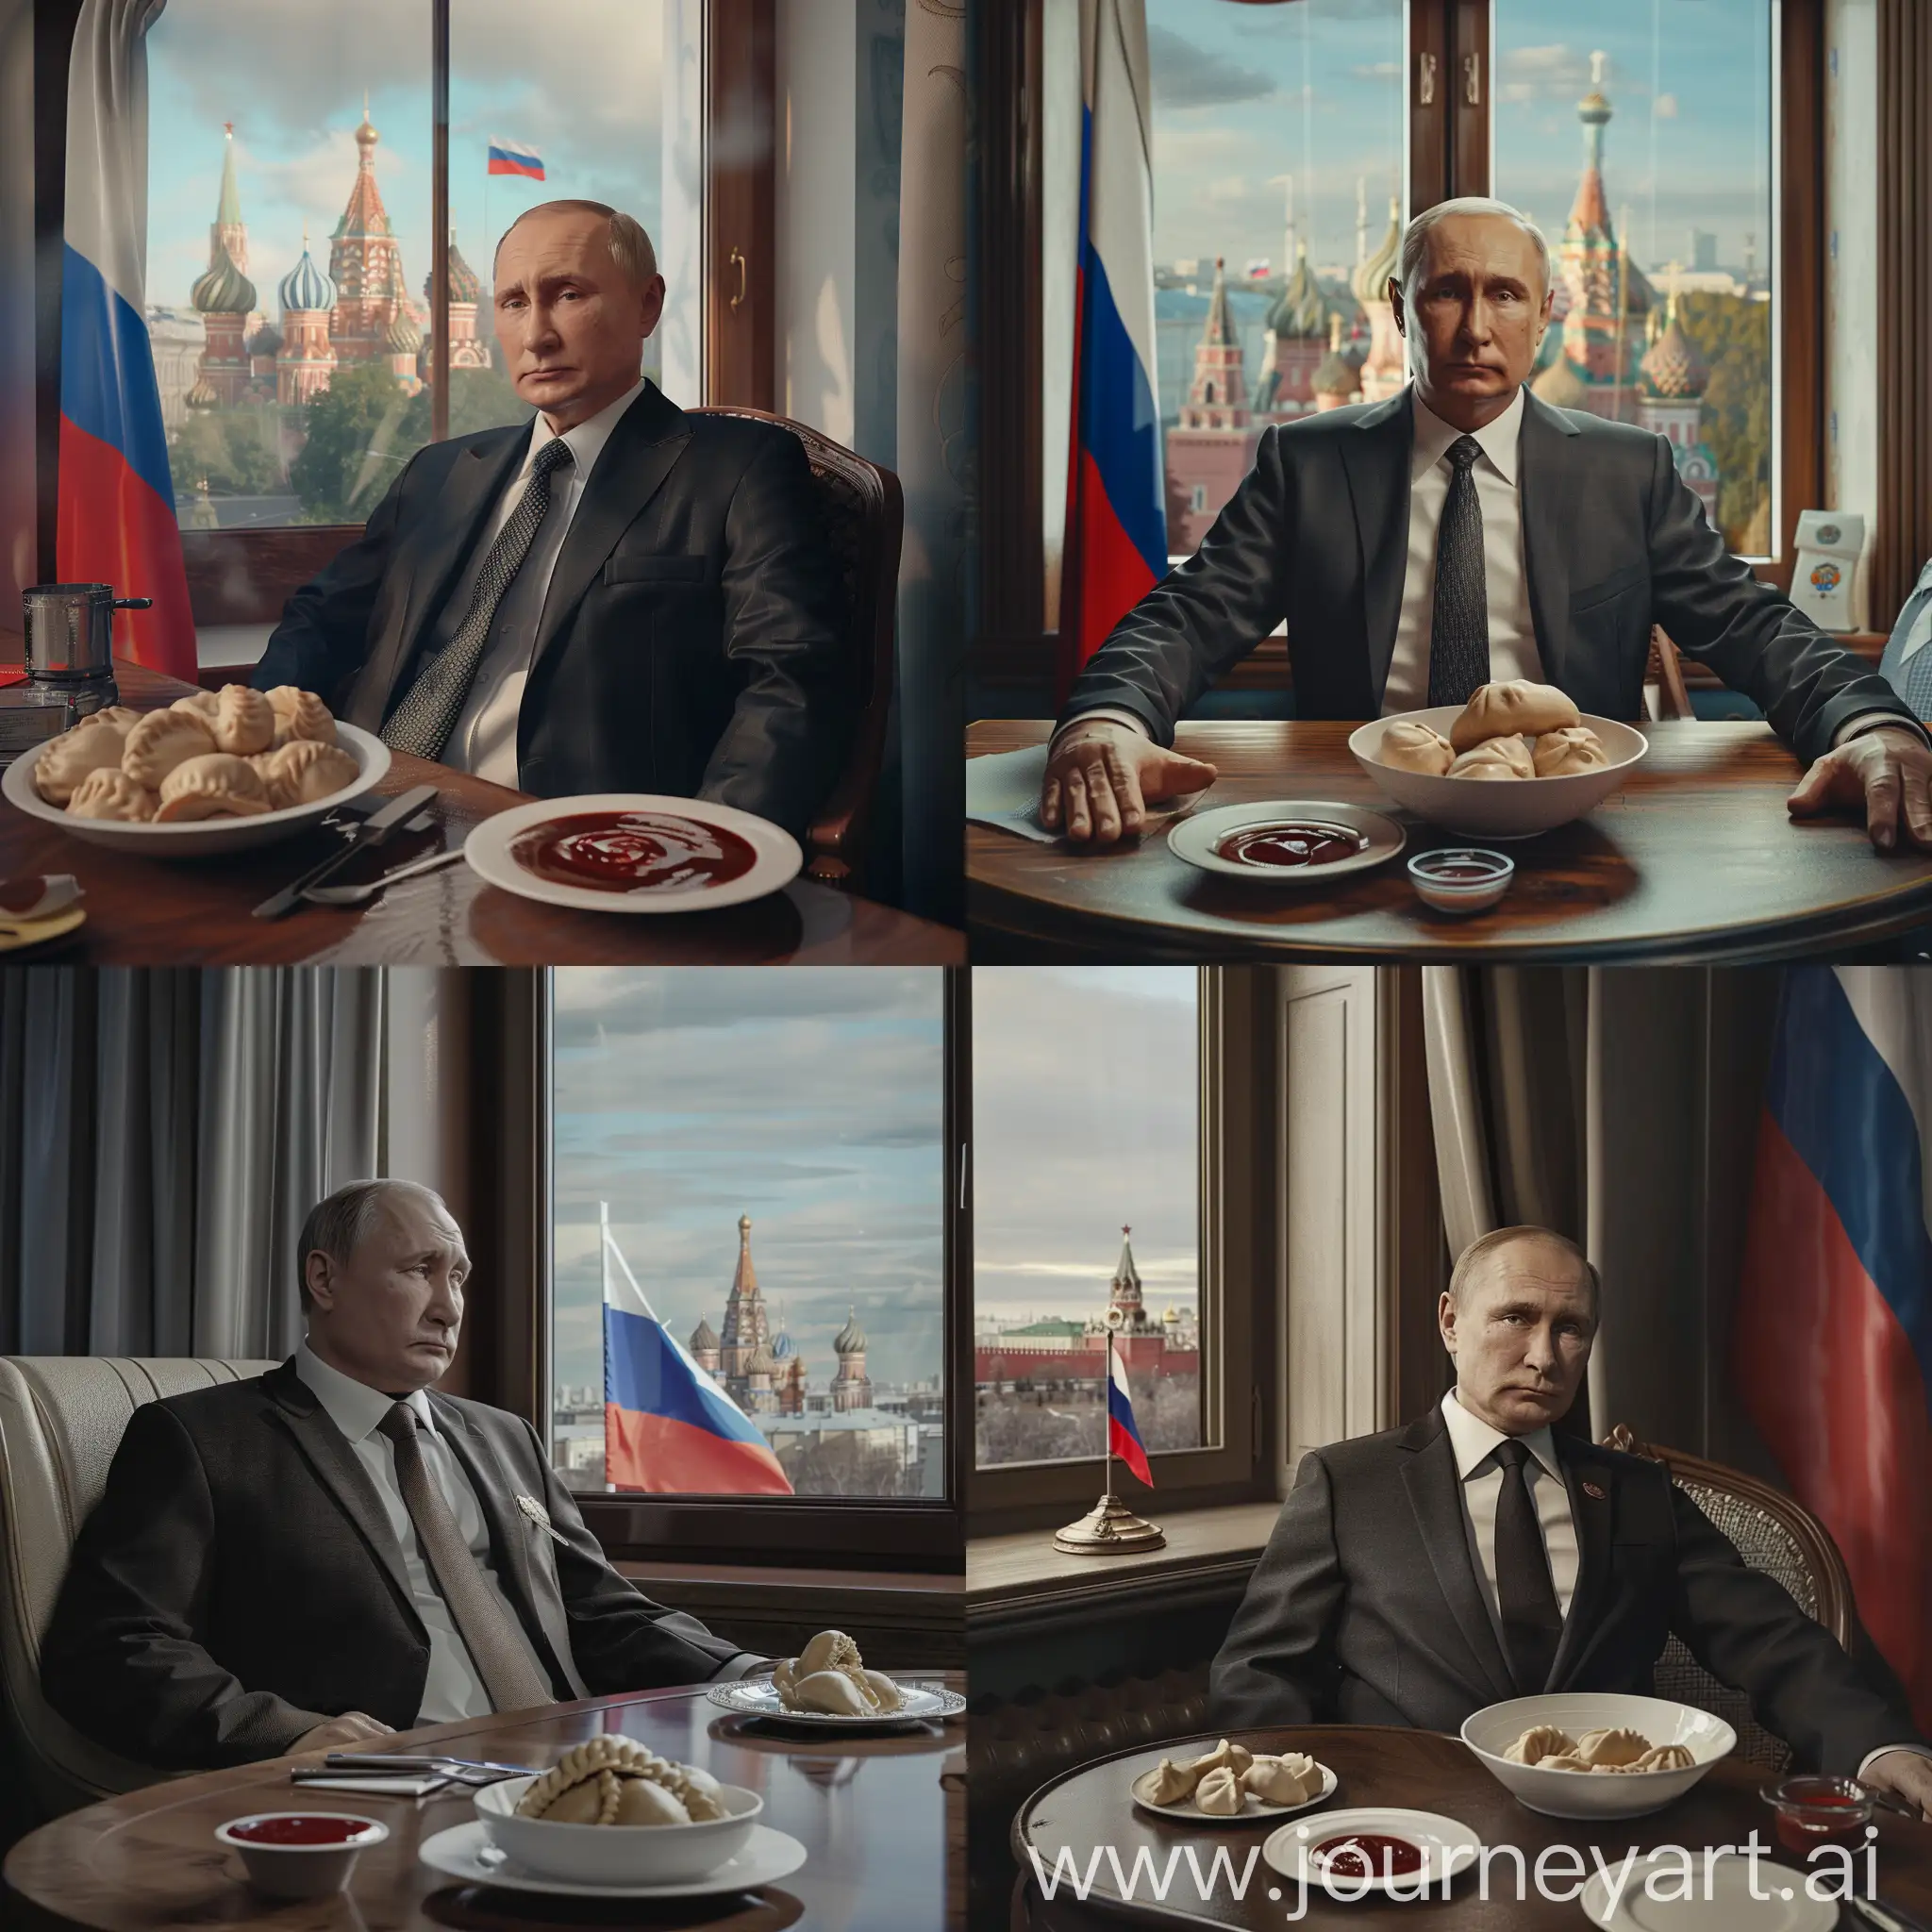 Владимир Путин в деловом костюме, сидит за столом, в тарелке пельмени, на столе соус, задний фон резиденция, гипер реализм, максимум деталей, 8к, HDR, профессиональное освещение, острый фокус, флаг россии, в окне видна красная площадь москвы